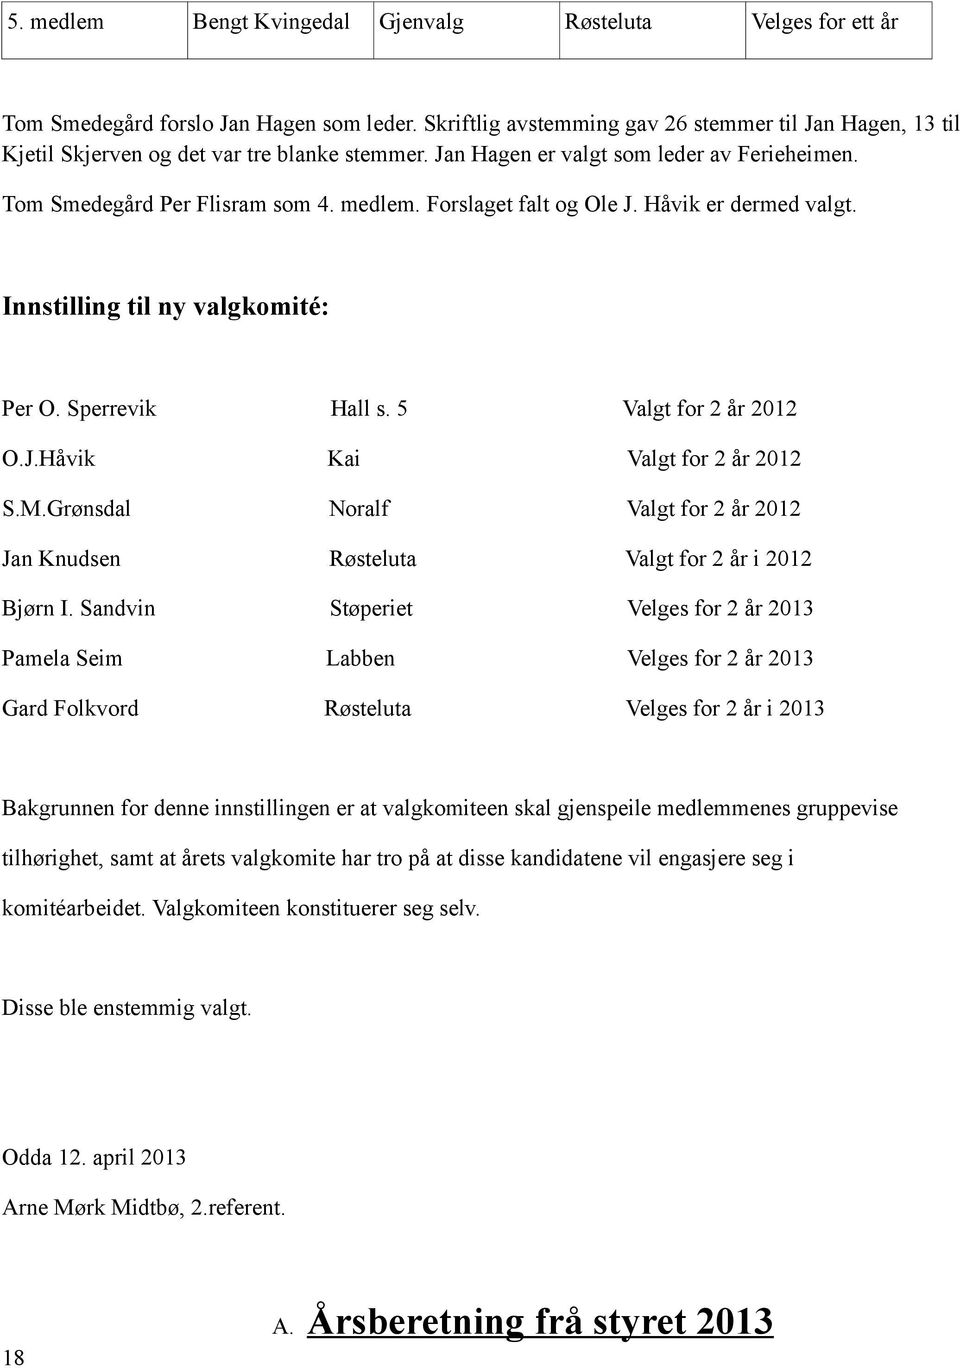 Forslaget falt og Ole J. Håvik er dermed valgt. Innstilling til ny valgkomité: Per O. Sperrevik Hall s. 5 Valgt for 2 år 2012 O.J.Håvik Kai Valgt for 2 år 2012 S.M.